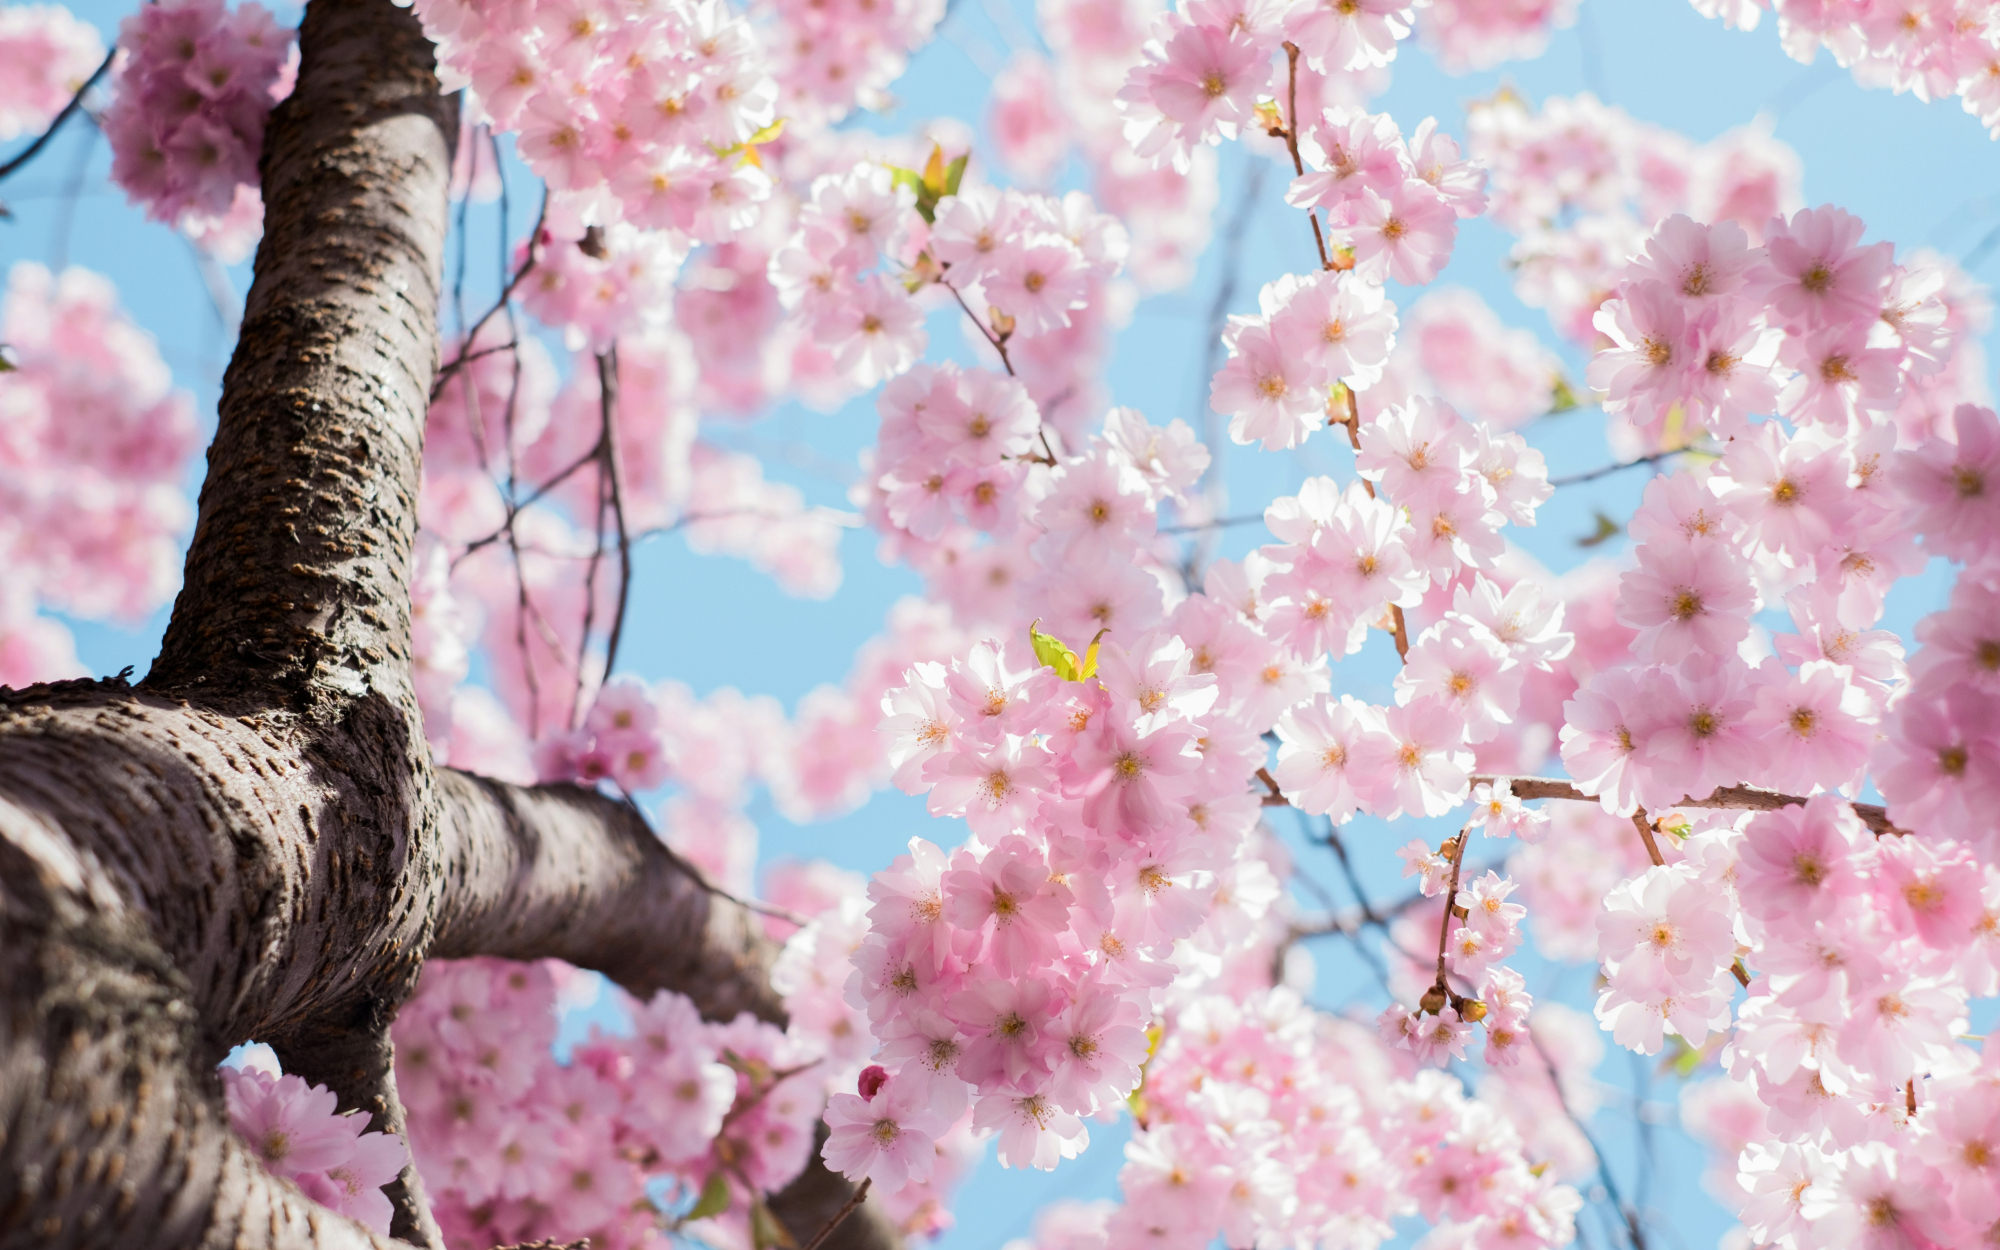 découvrez la beauté éphémère des cerisiers en fleurs avec notre collection de produits inspirés par les cherry blossoms.